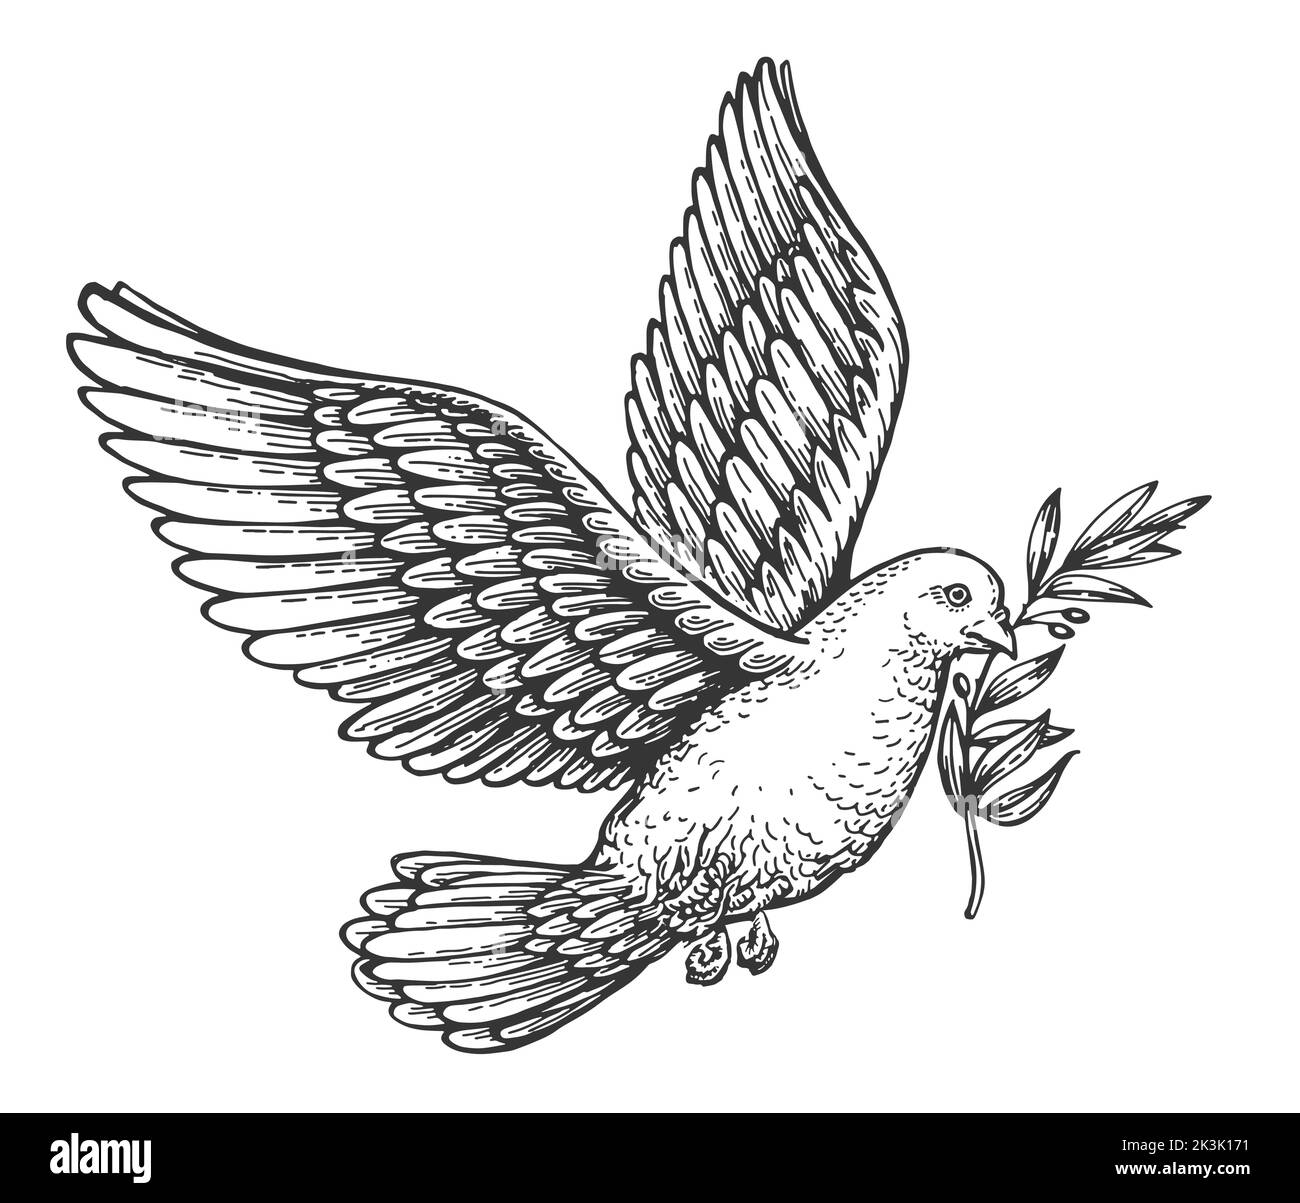 Paloma de paz voladora con rama de olivo. Boceto del símbolo de pureza espiritual. Ilustración vectorial en estilo de grabado vintage Ilustración del Vector